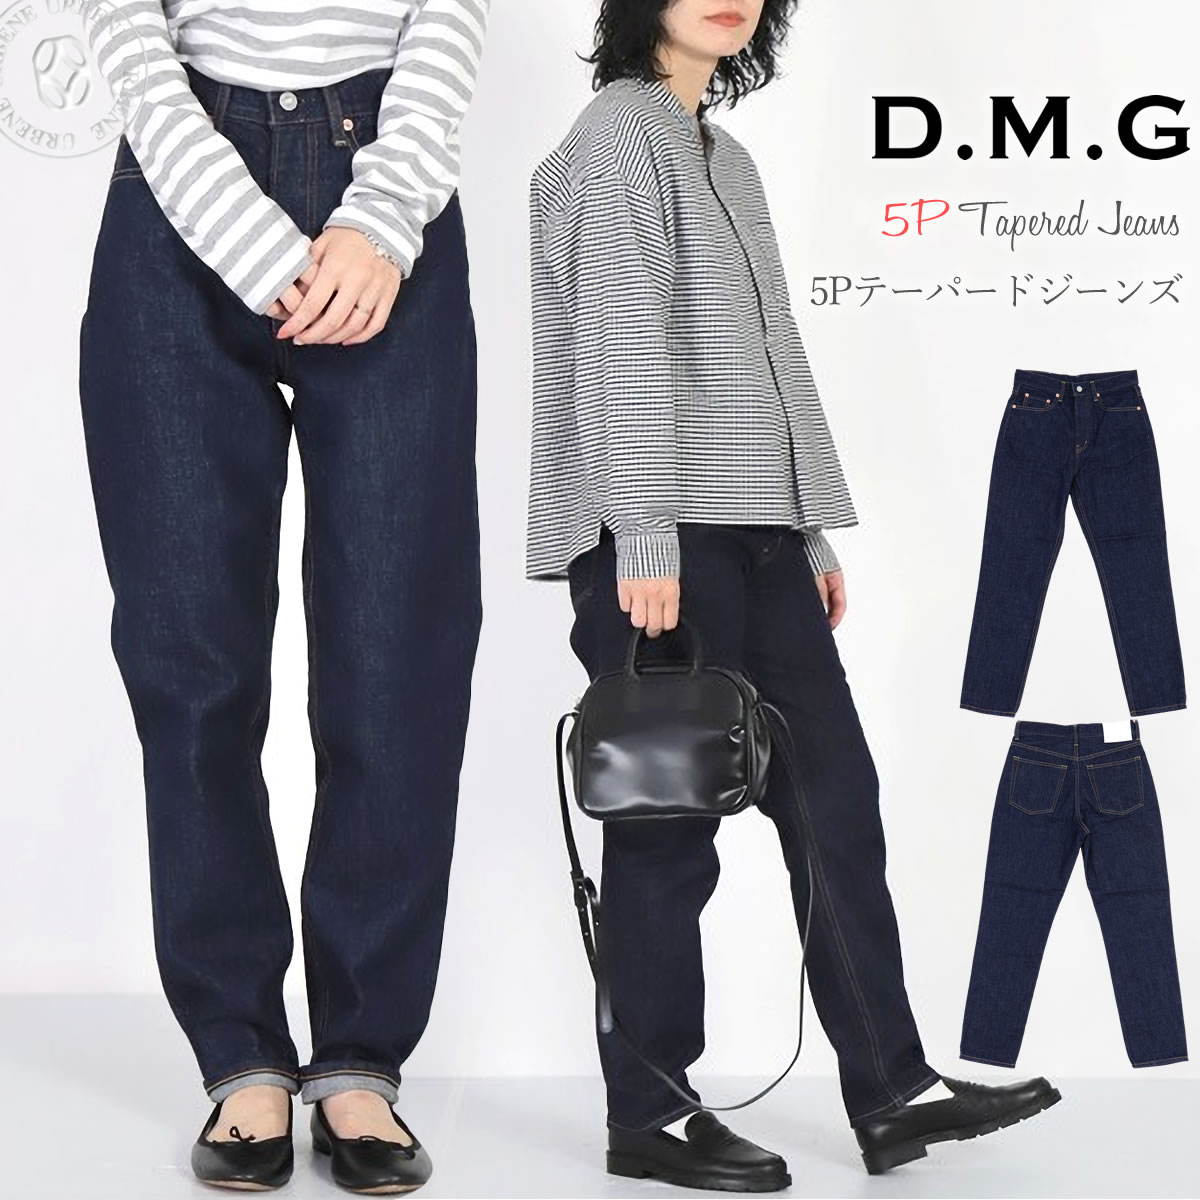 ドミンゴ ジーンズ DMG ワンウォッシュデニム 5ポケット テーパードジーンズ 股上深め メンズライク レディース ディーエムジー  :dmg-15-260b:ジーンズカジュアル アーベン-メンズレディース 通販 